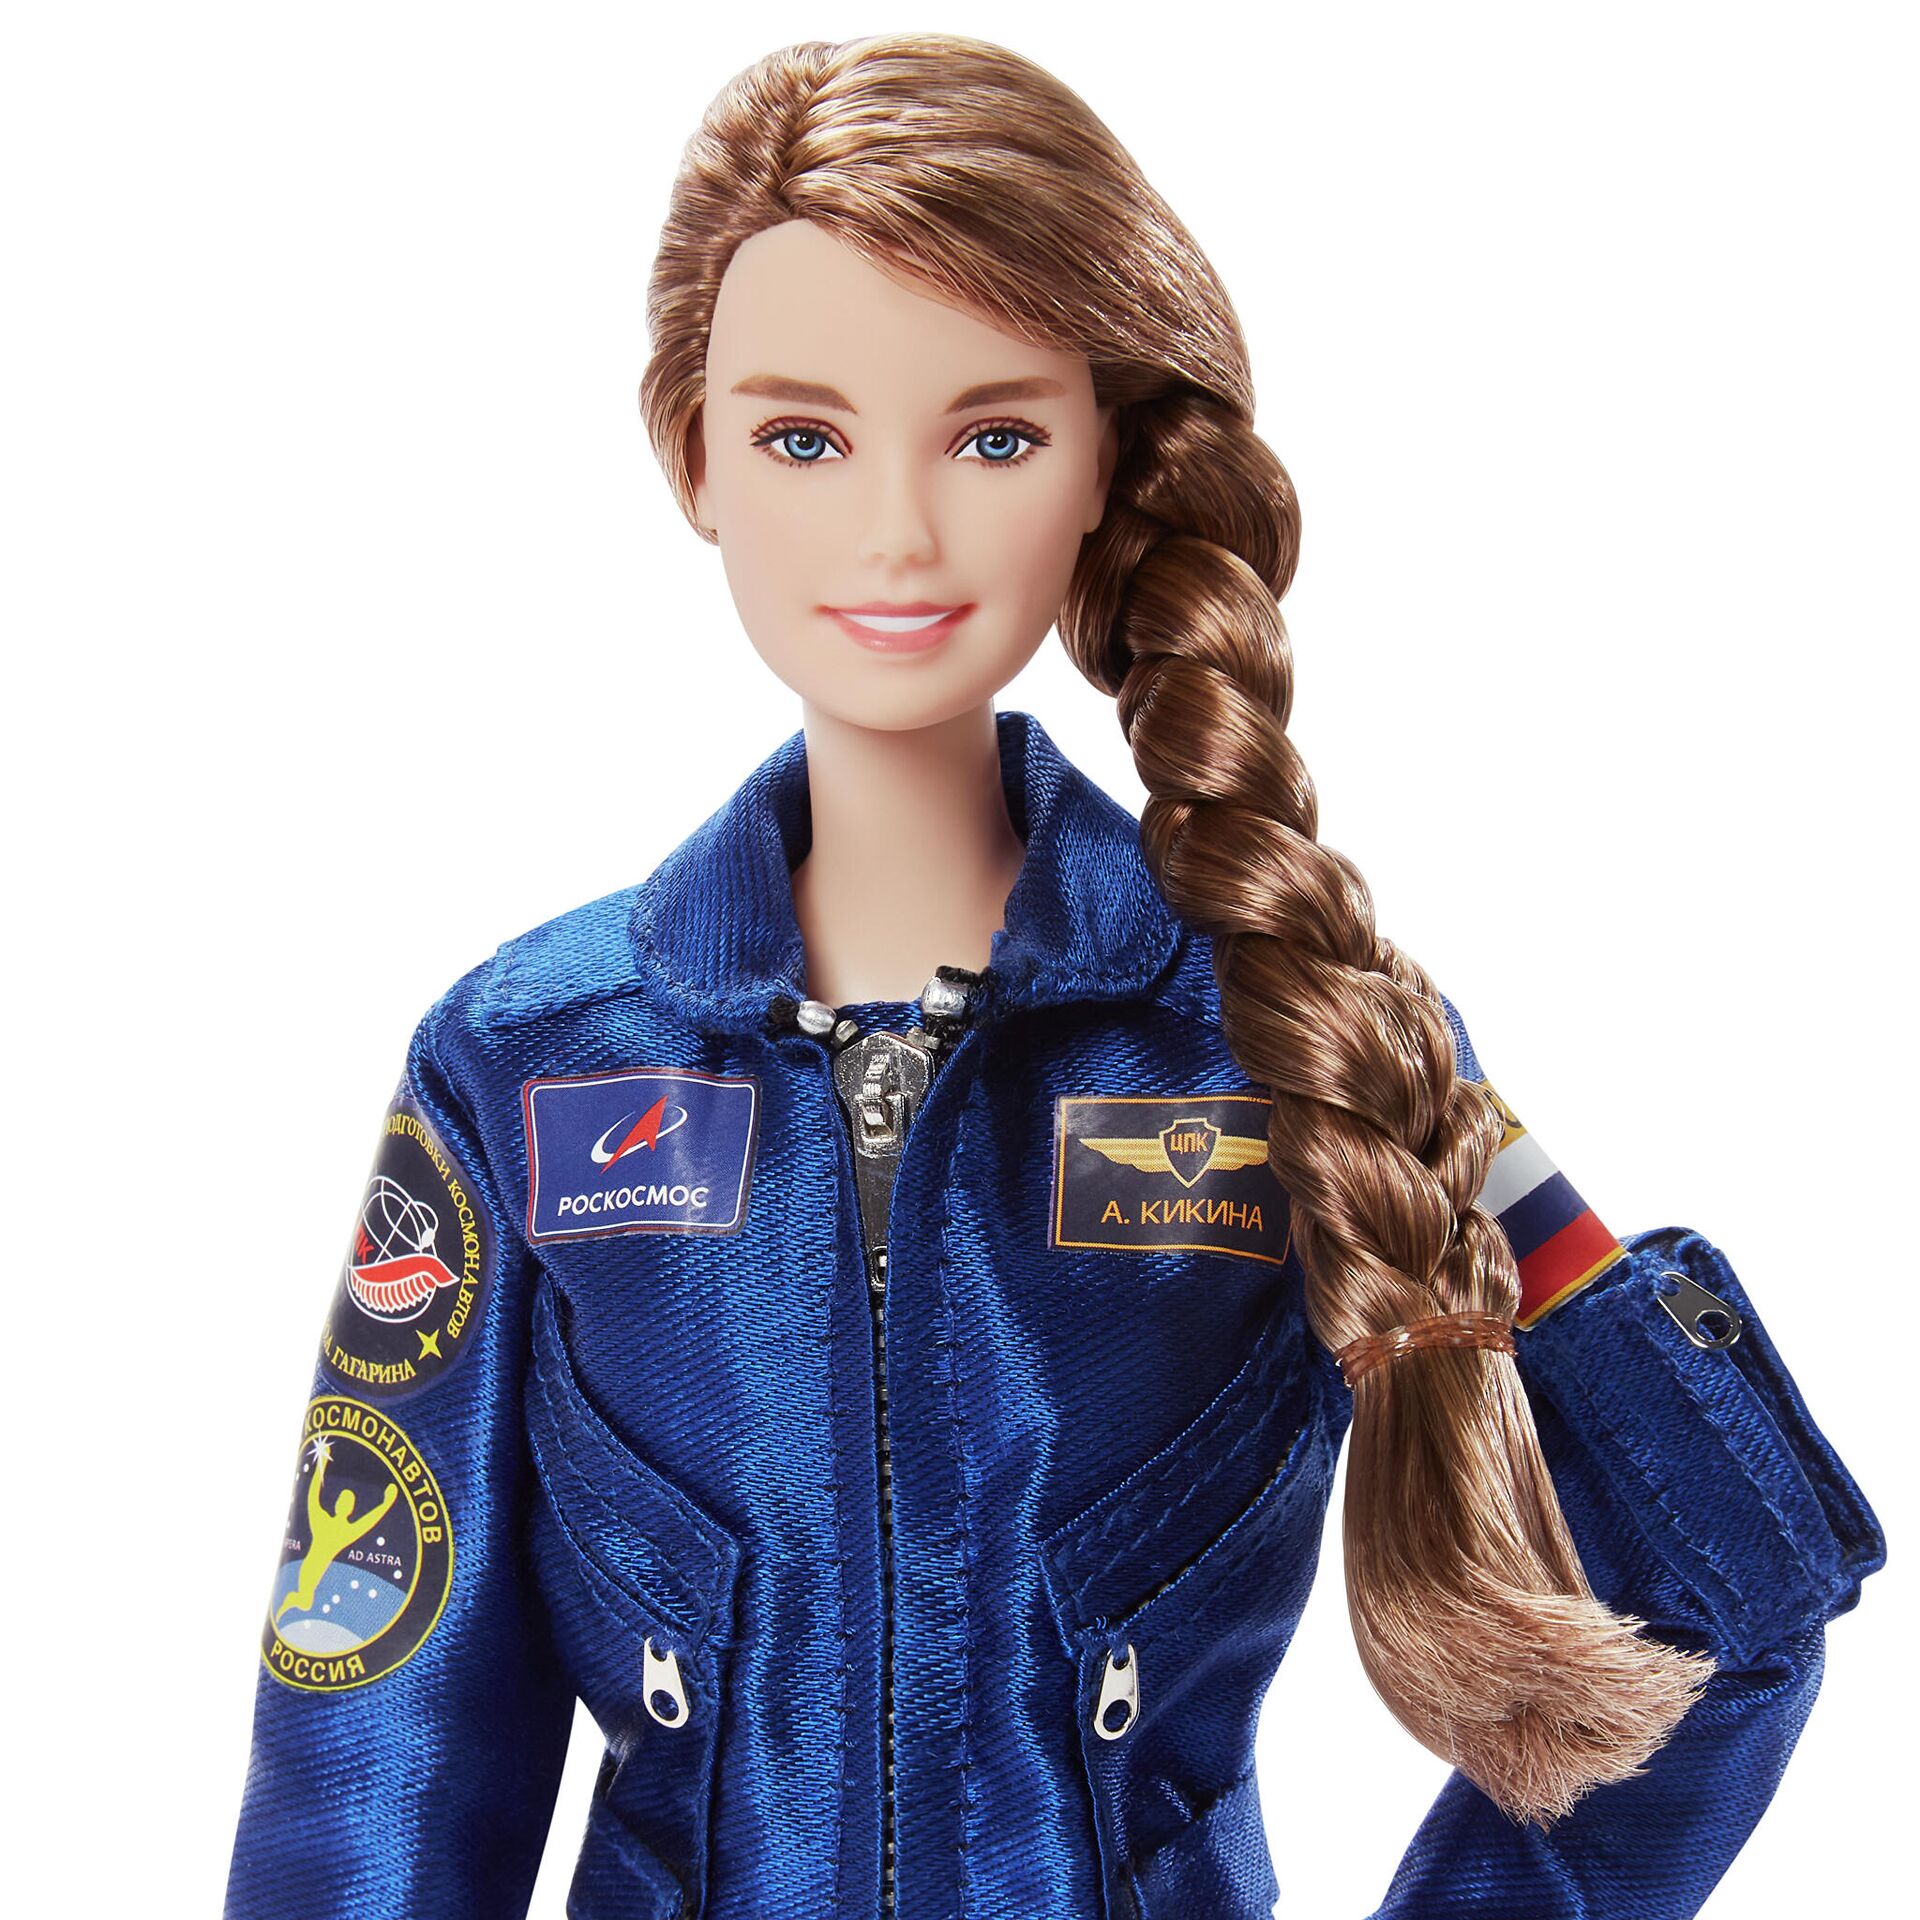 La muñeca Barbie cosmonauta con la imagen de la cosmonauta rusa Ana Kíkina - Sputnik Mundo, 1920, 16.03.2021